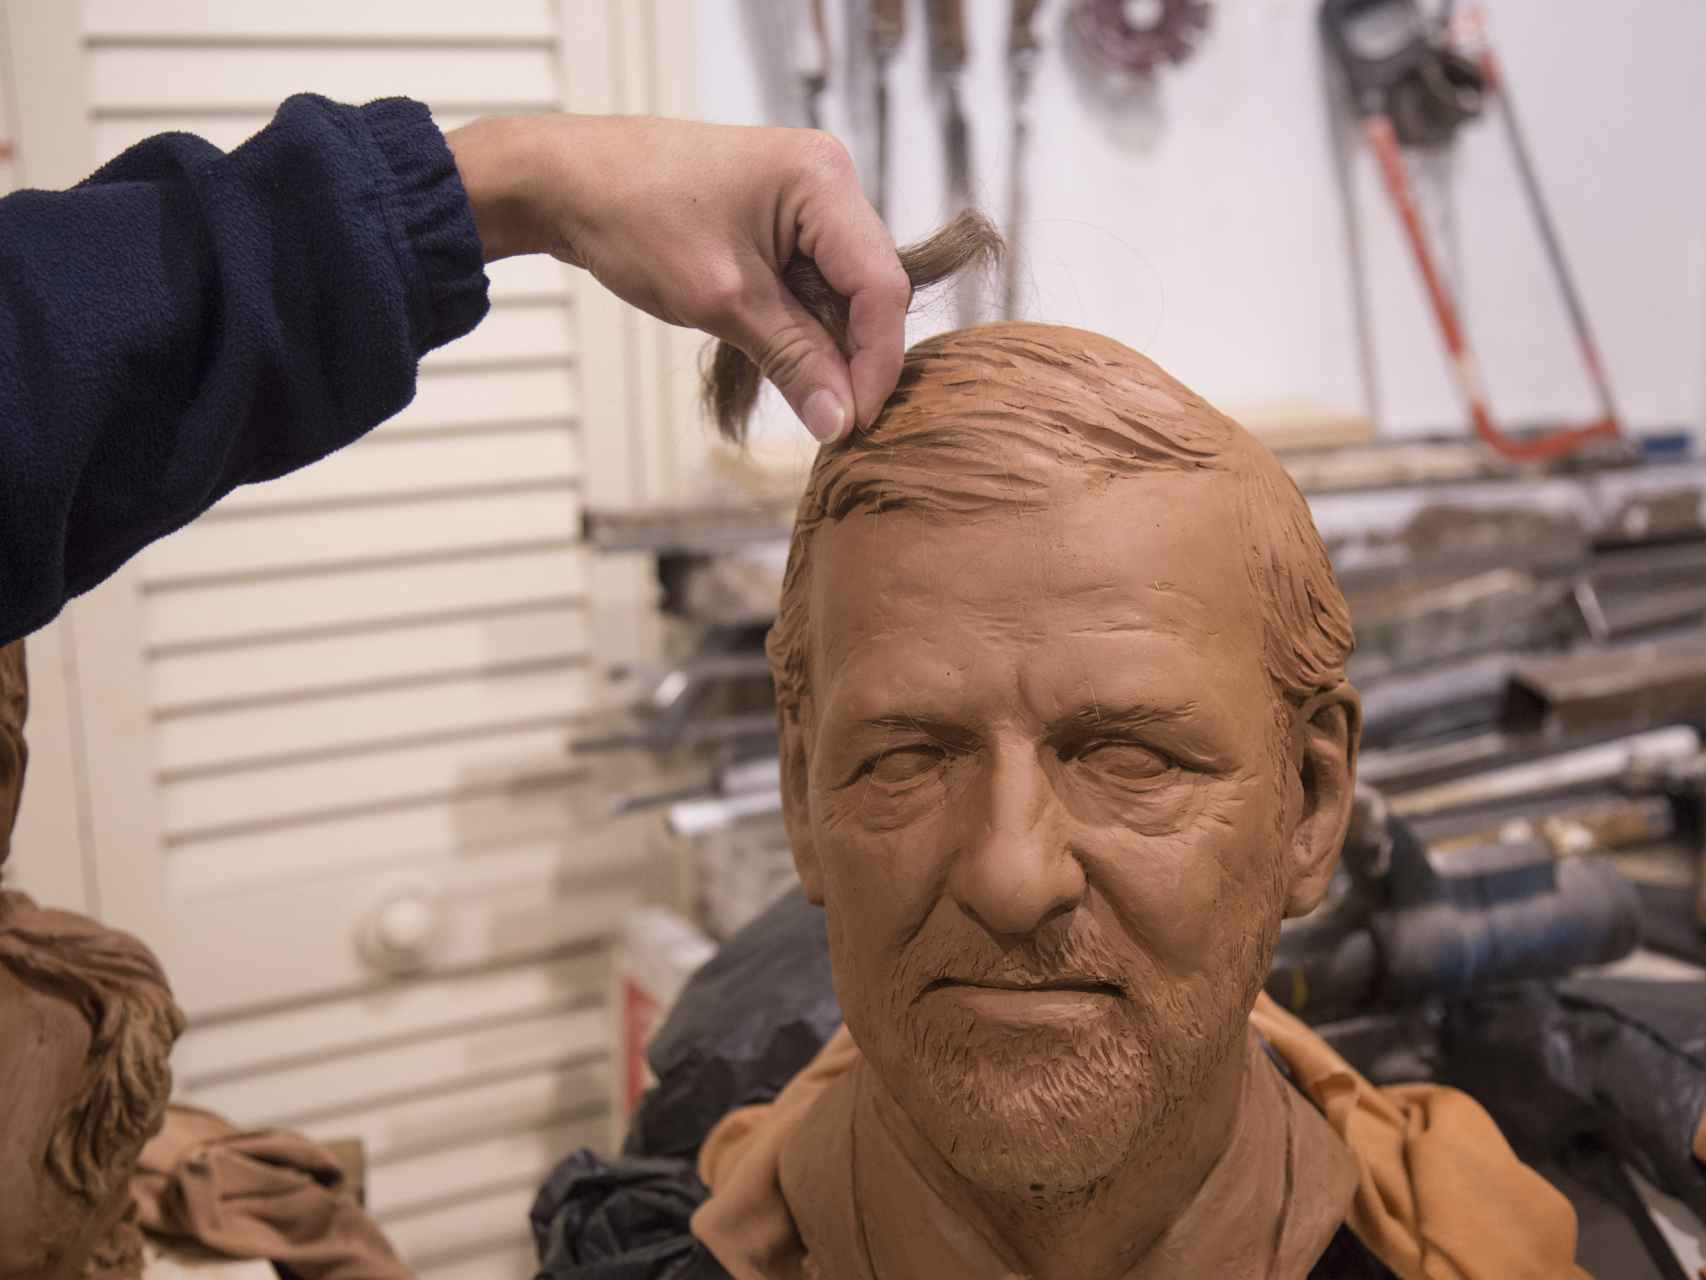 El busto en arcilla de Mariano Rajoy, con un trozo de pelo natural que se le injertaría a la figura de cera si llega a ser expuesta.